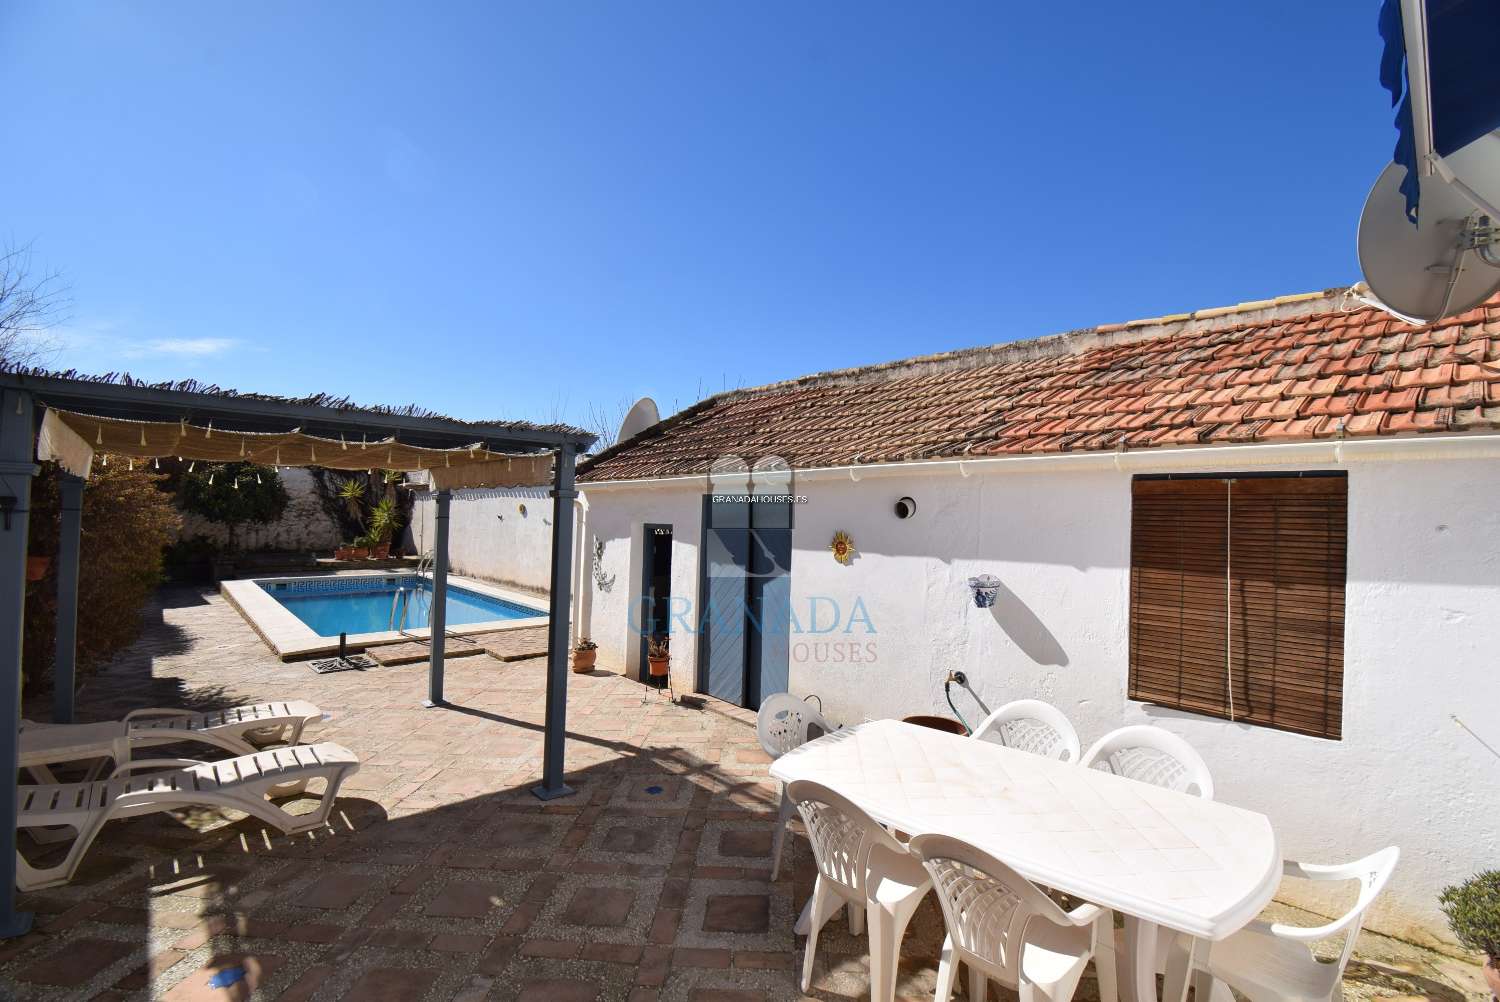 Vackert andalusiskt hus med stor uteplats och pool